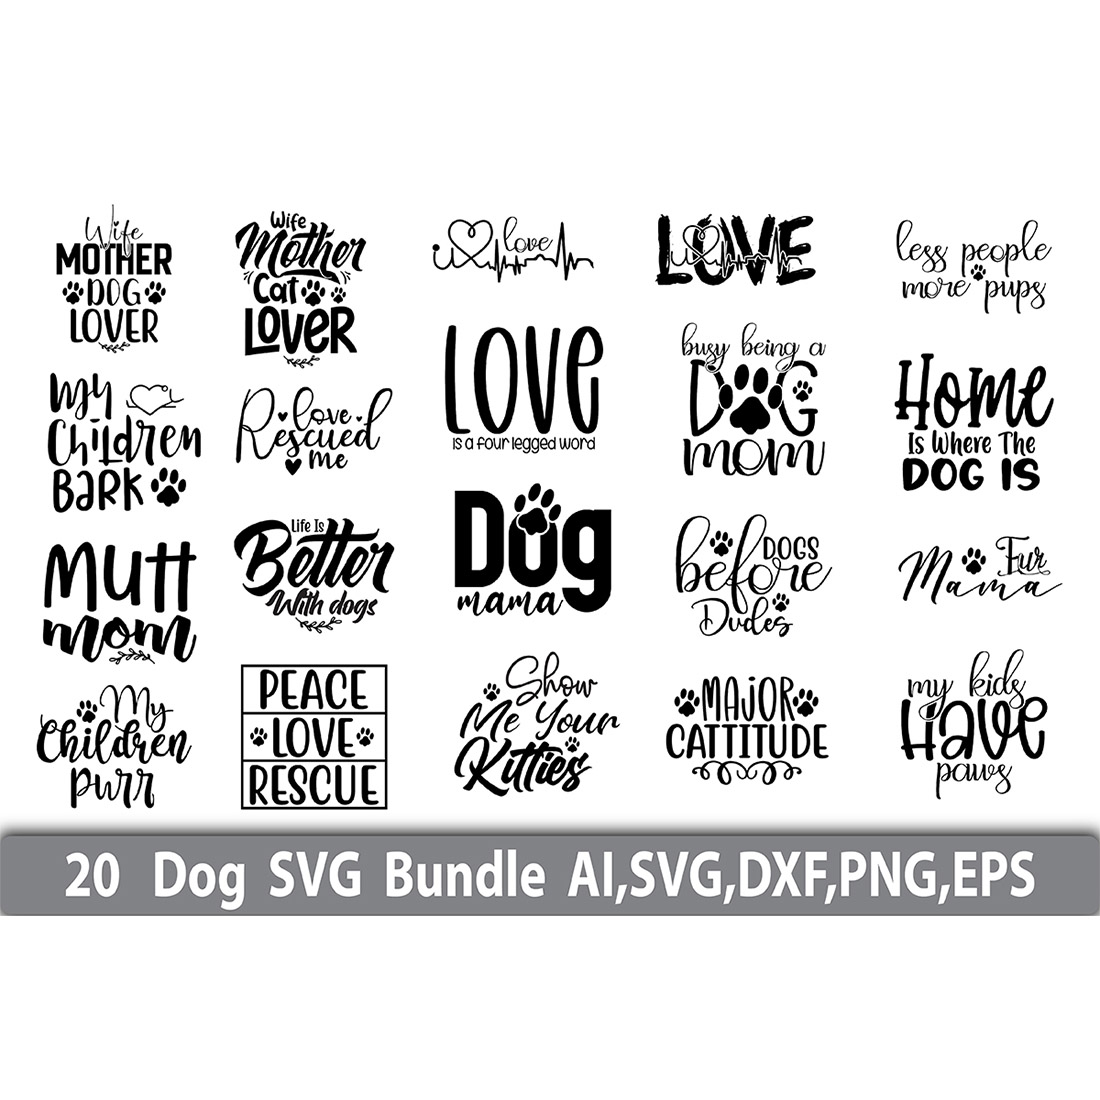 Dog Design SVG Bundle cover image.